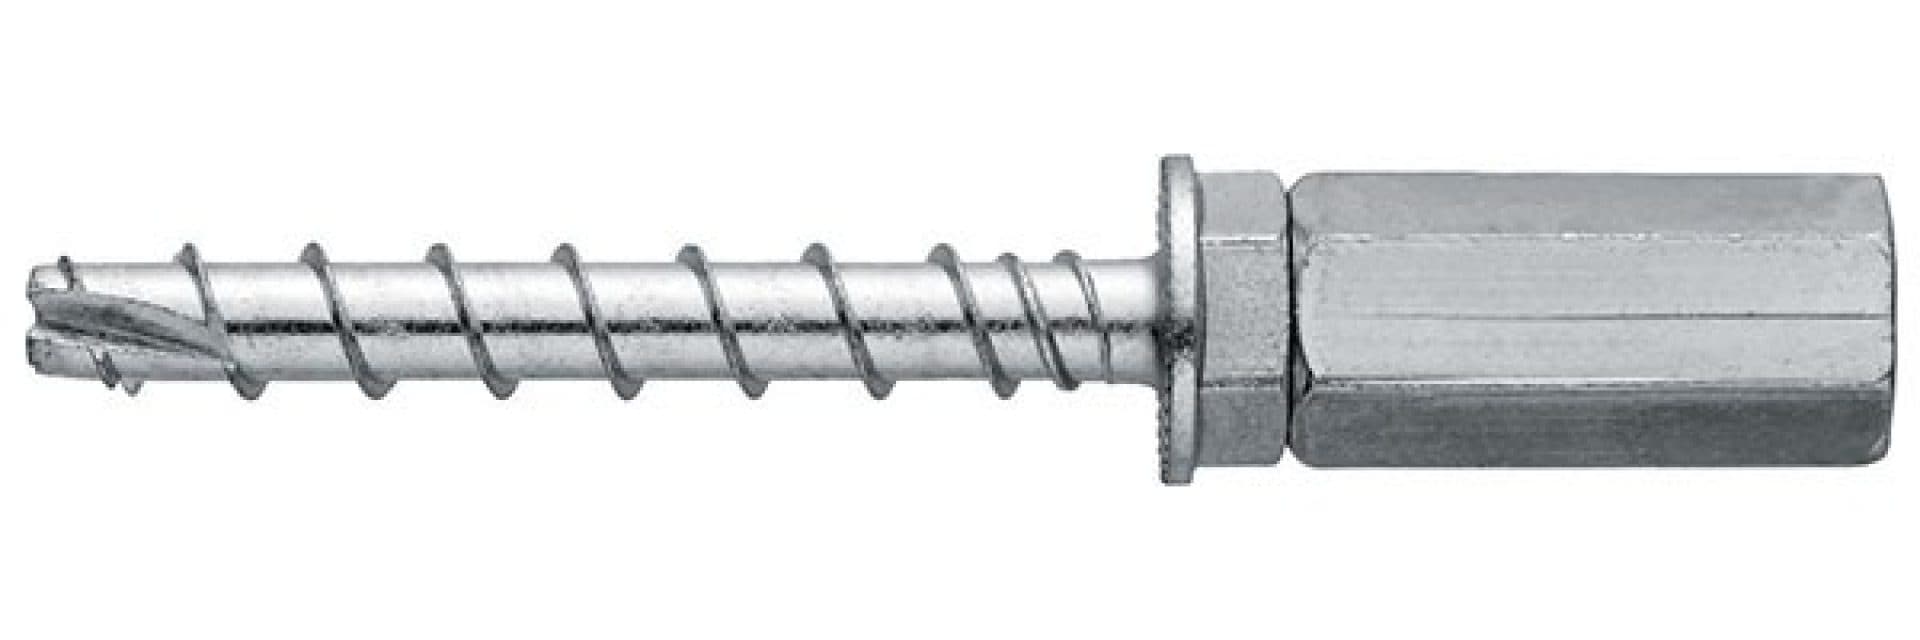 HUS3-I Flex 6 screw anchor